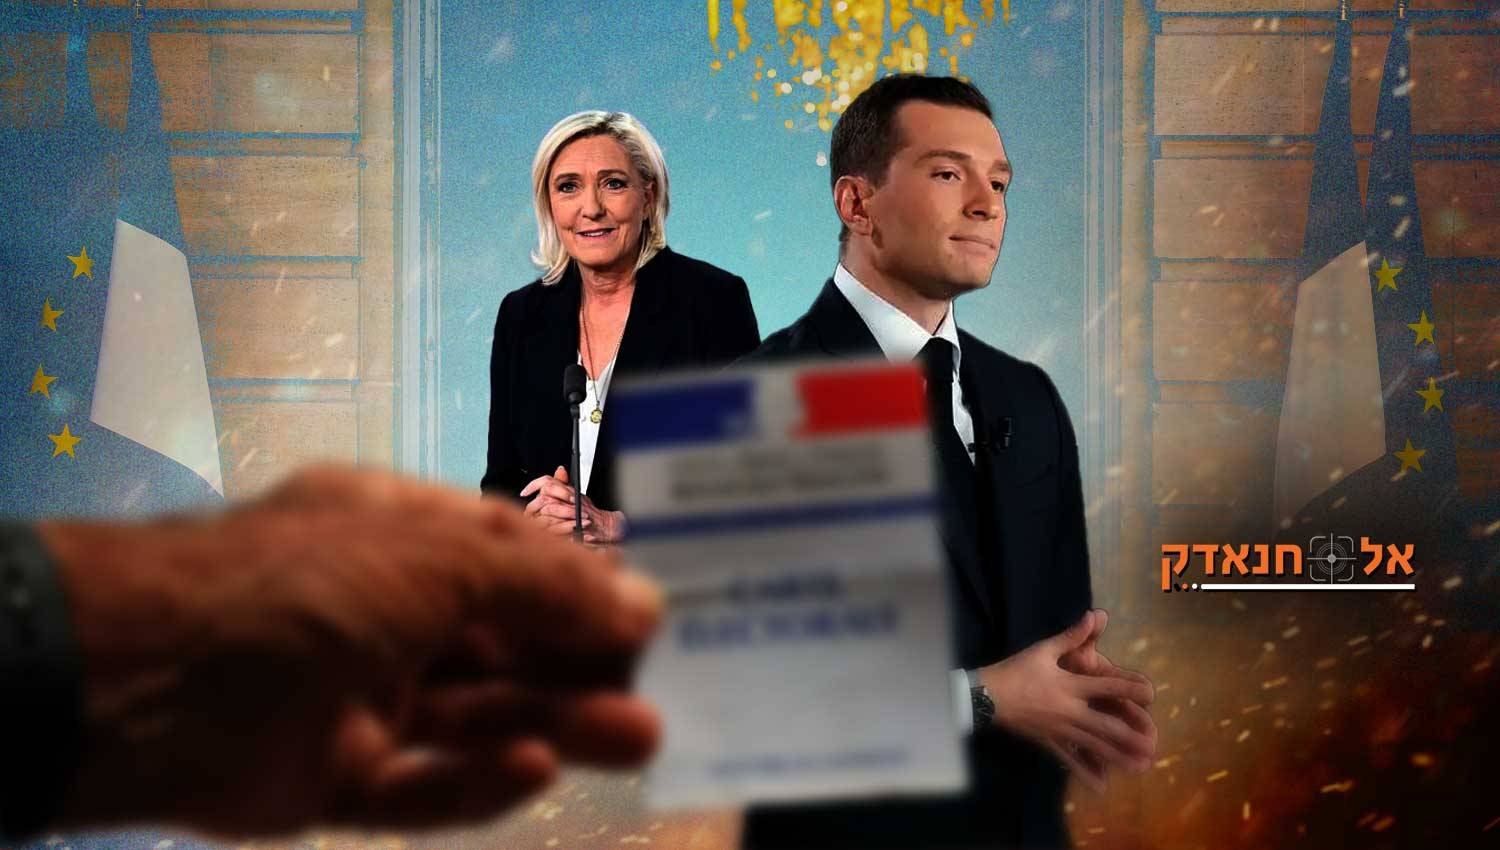 הימין הקיצוני נכשל בסיבוב השני: האם צרפת נוטה שמאלה?